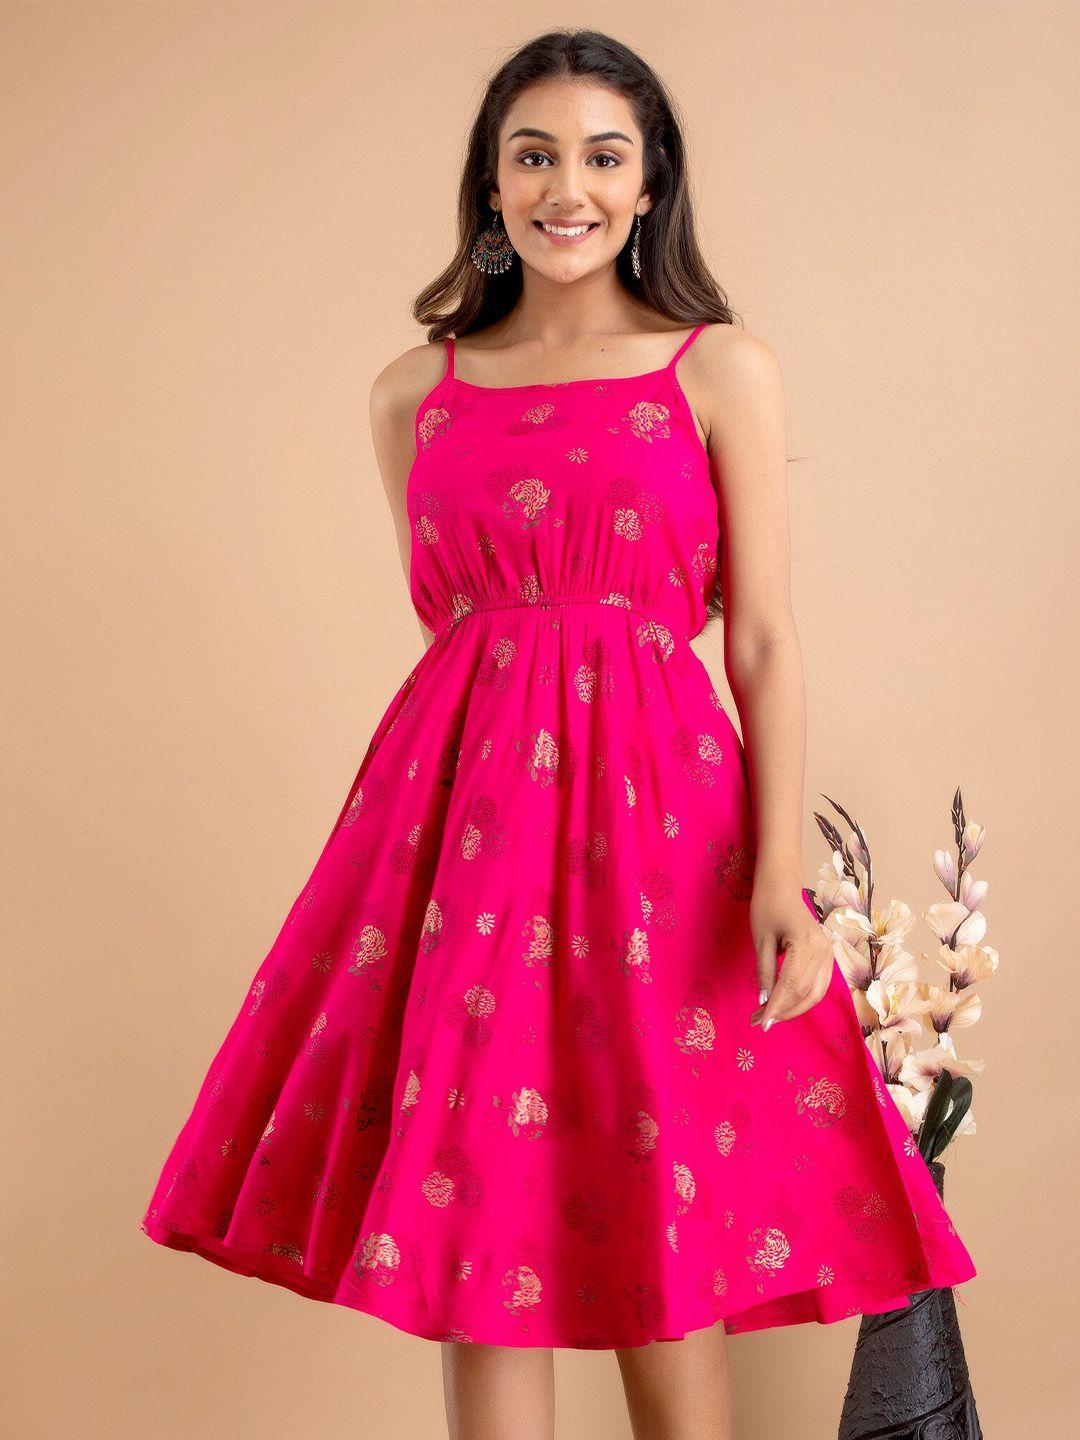 unibliss-pink-&-vivid-raspberry-floral-print-fit-&-flare-midi-dress